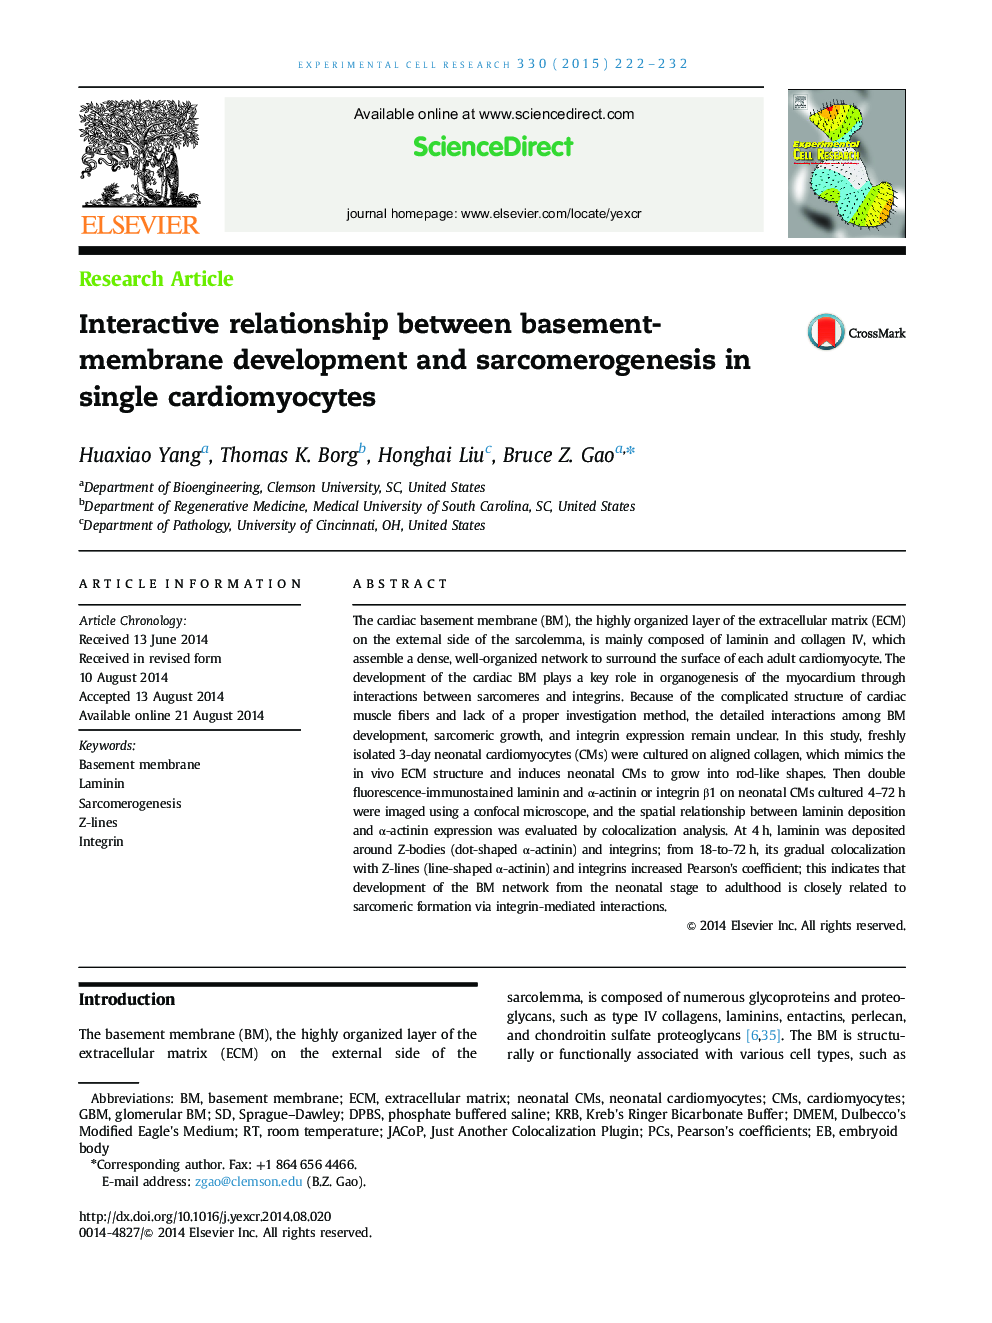 ارتباط تعاملی بین توسعه زیرزمین غشا و سارکومرژنوز در تک قارچ ها 